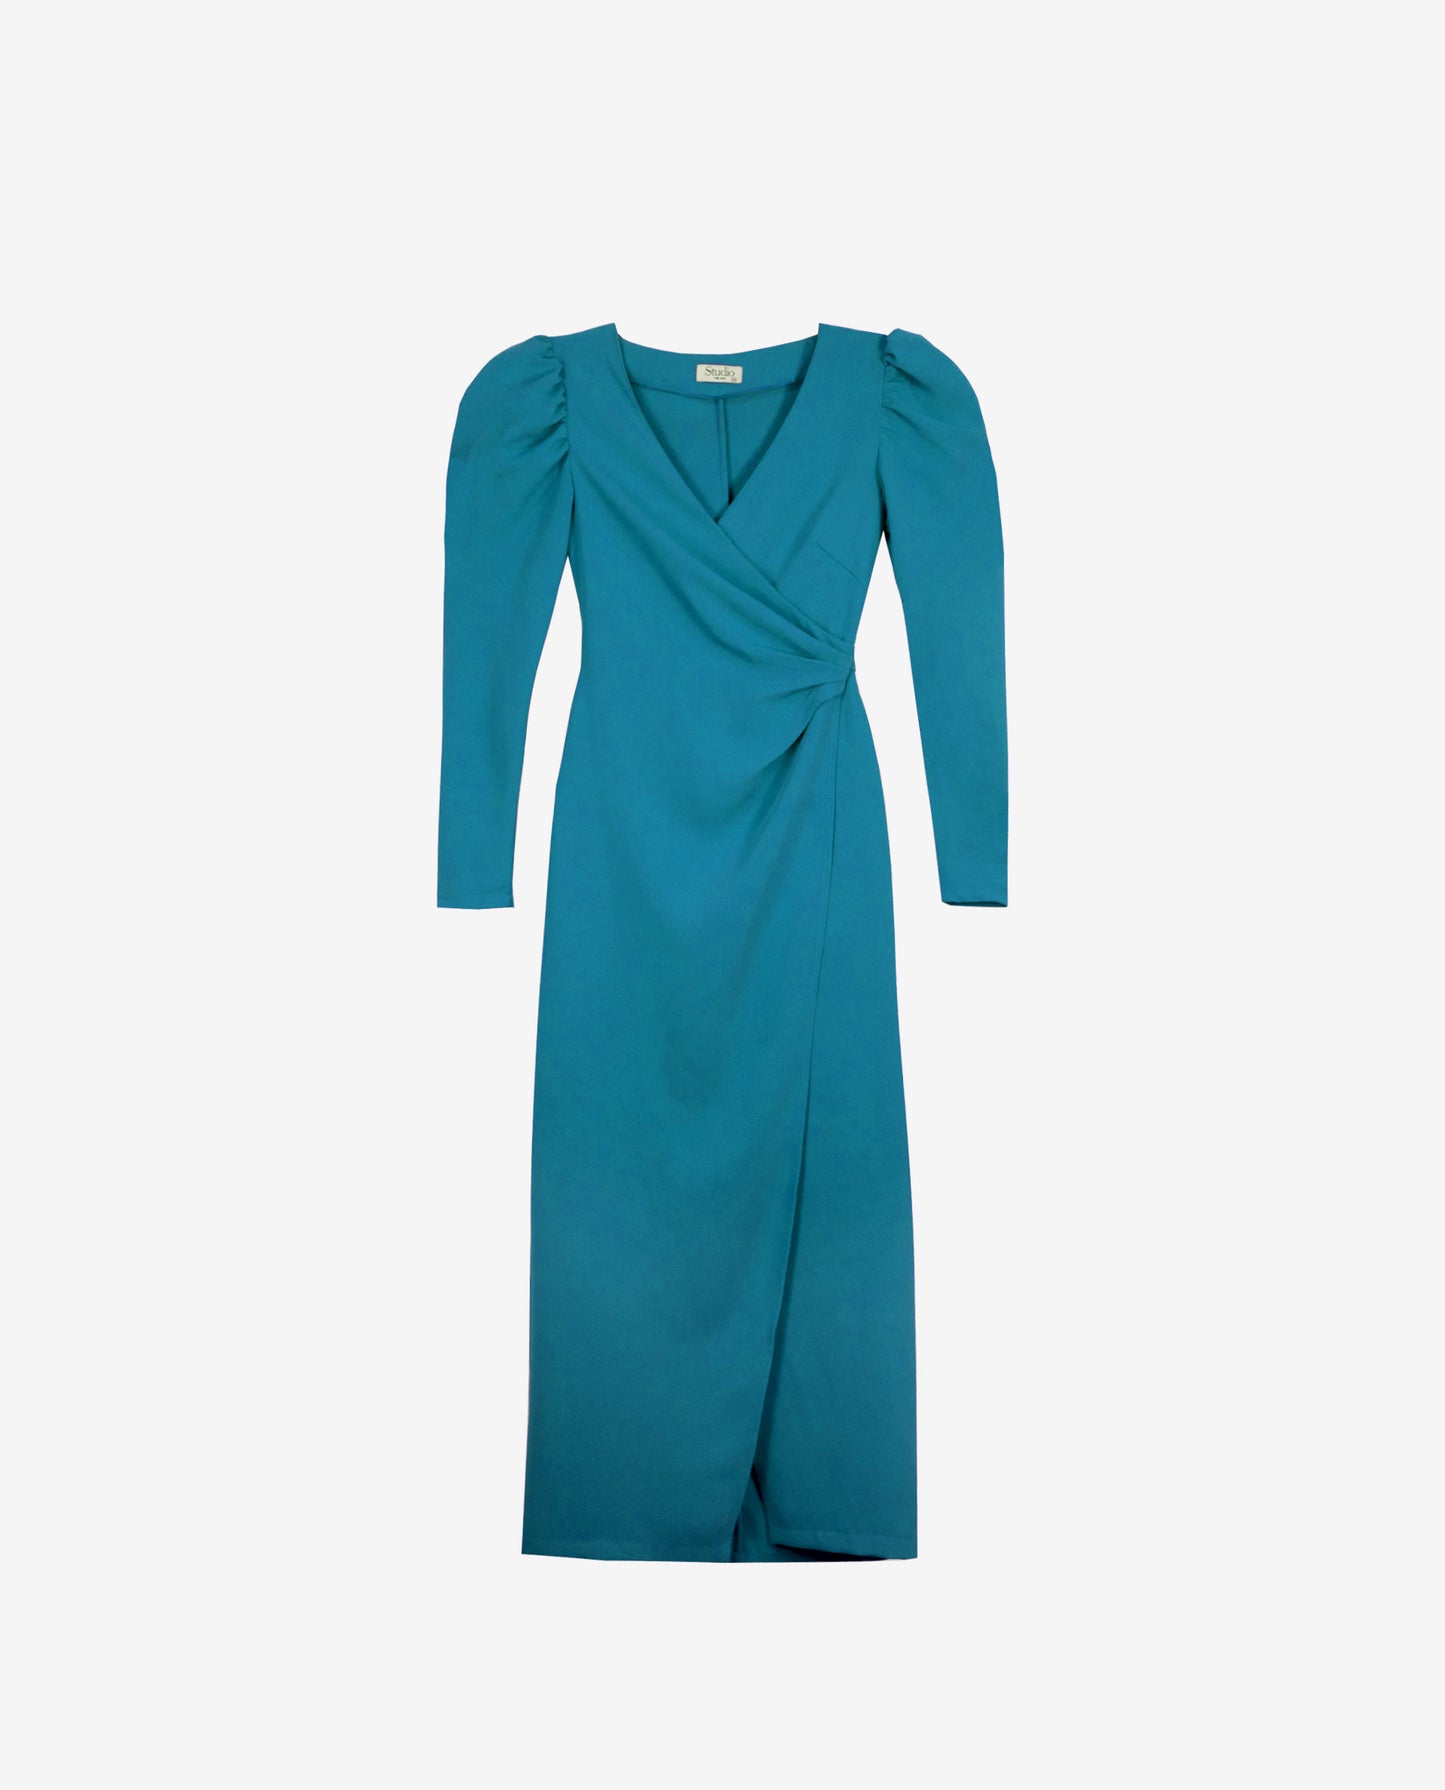 VESTIDO MRS THOMPSON | Vestido Midi Verde Cruzado Elegante | Vestidos Invitadas THE-ARE